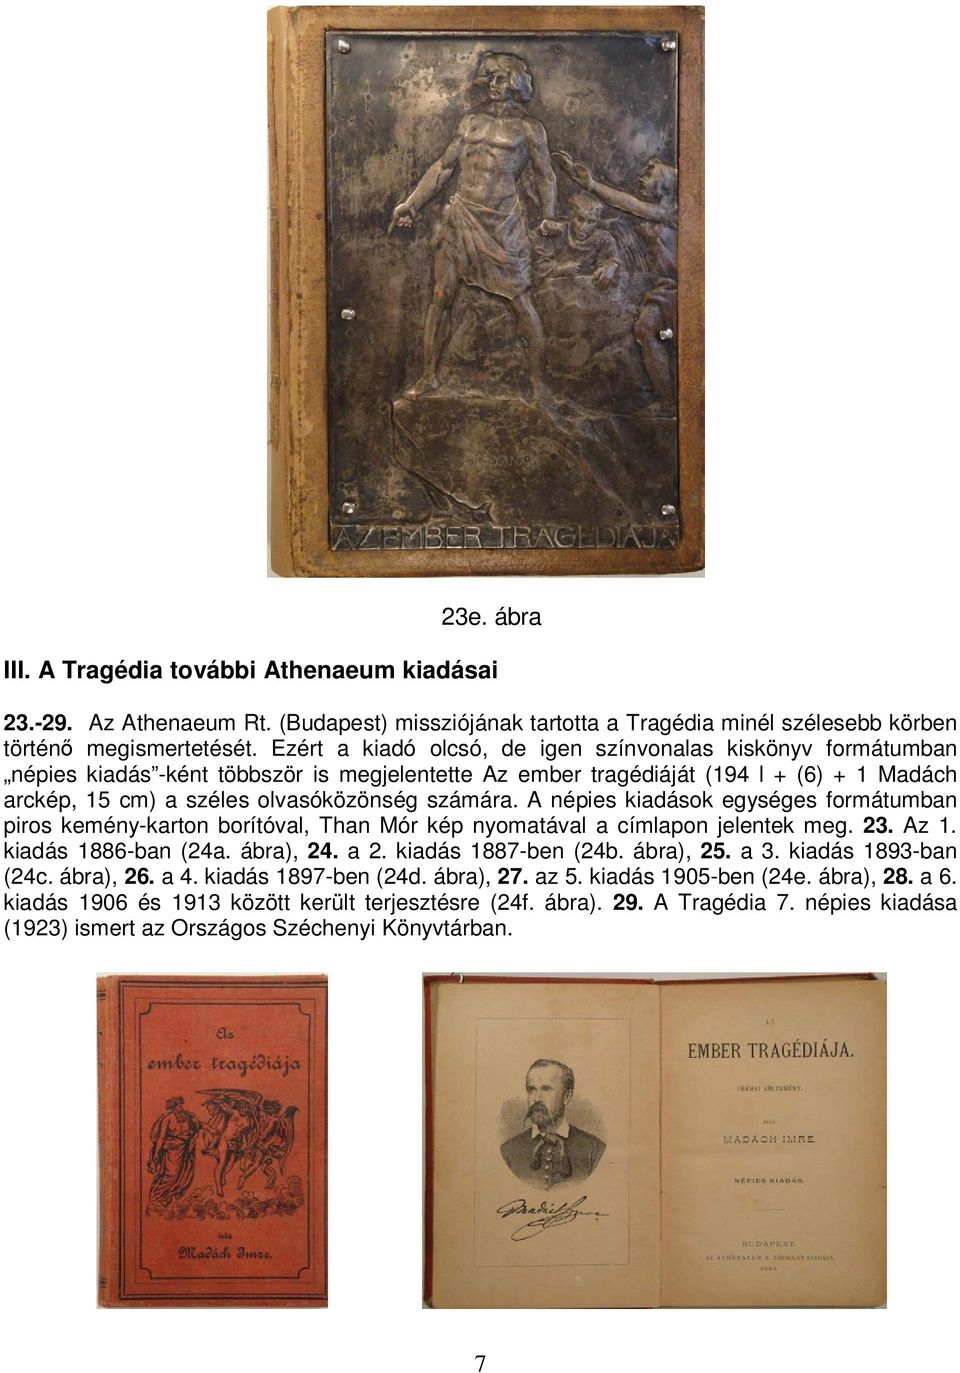 A népies kiadások egységes formátumban piros kemény-karton borítóval, Than Mór kép nyomatával a címlapon jelentek meg. 23. Az 1. kiadás 1886-ban (24a. ábra), 24. a 2. kiadás 1887-ben (24b. ábra), 25.